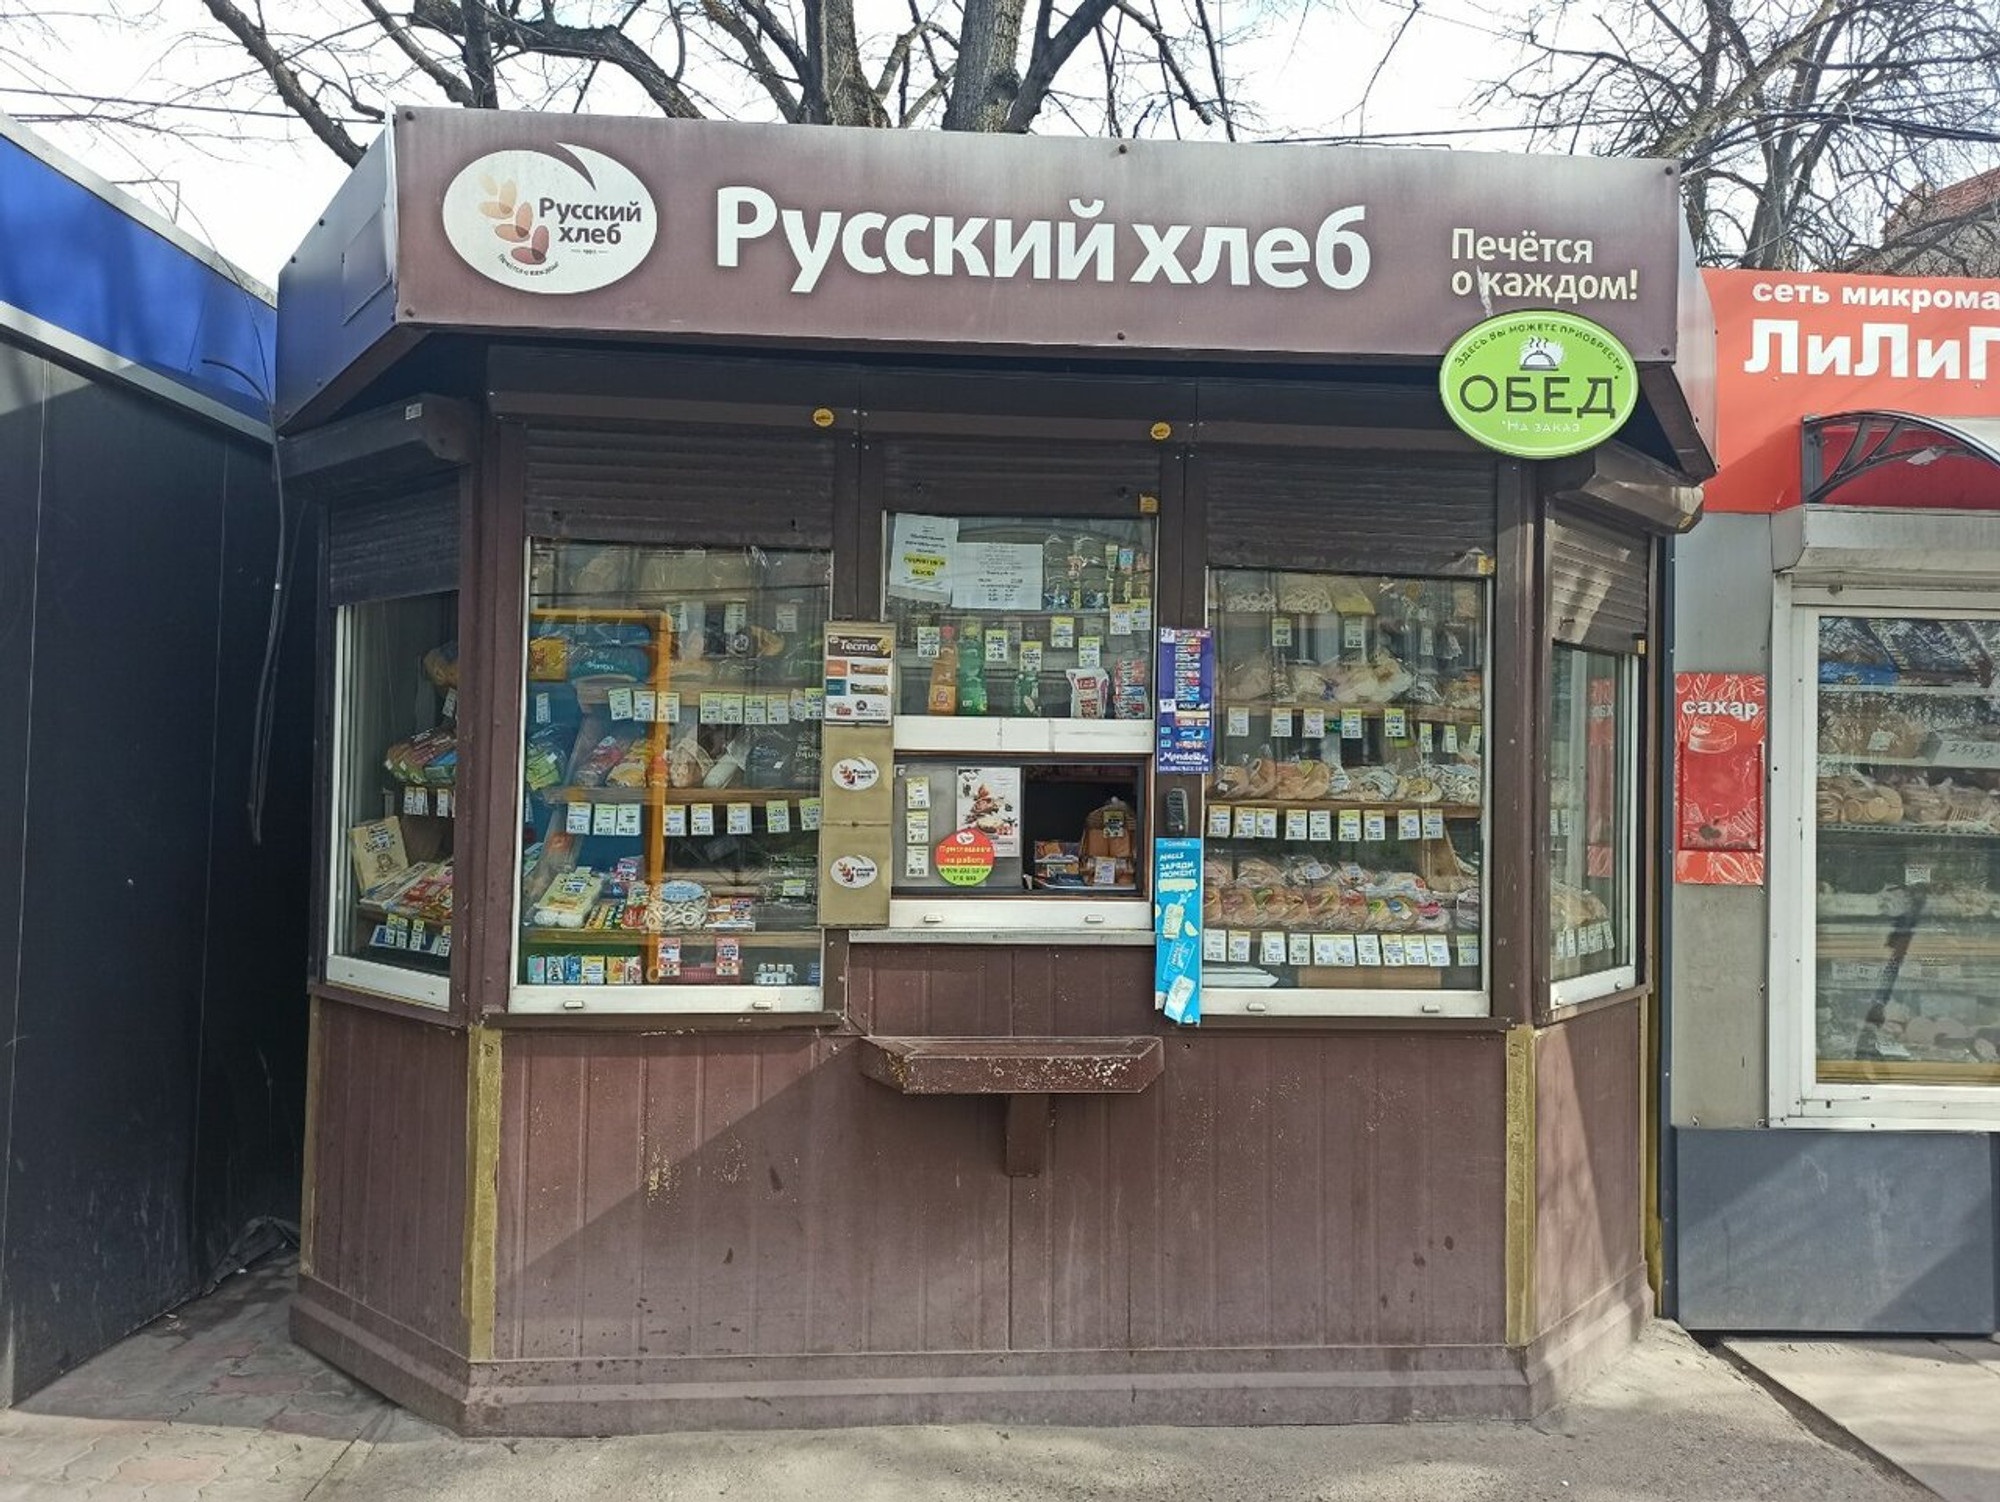 Русский хлеб (Булочная, пекарня)